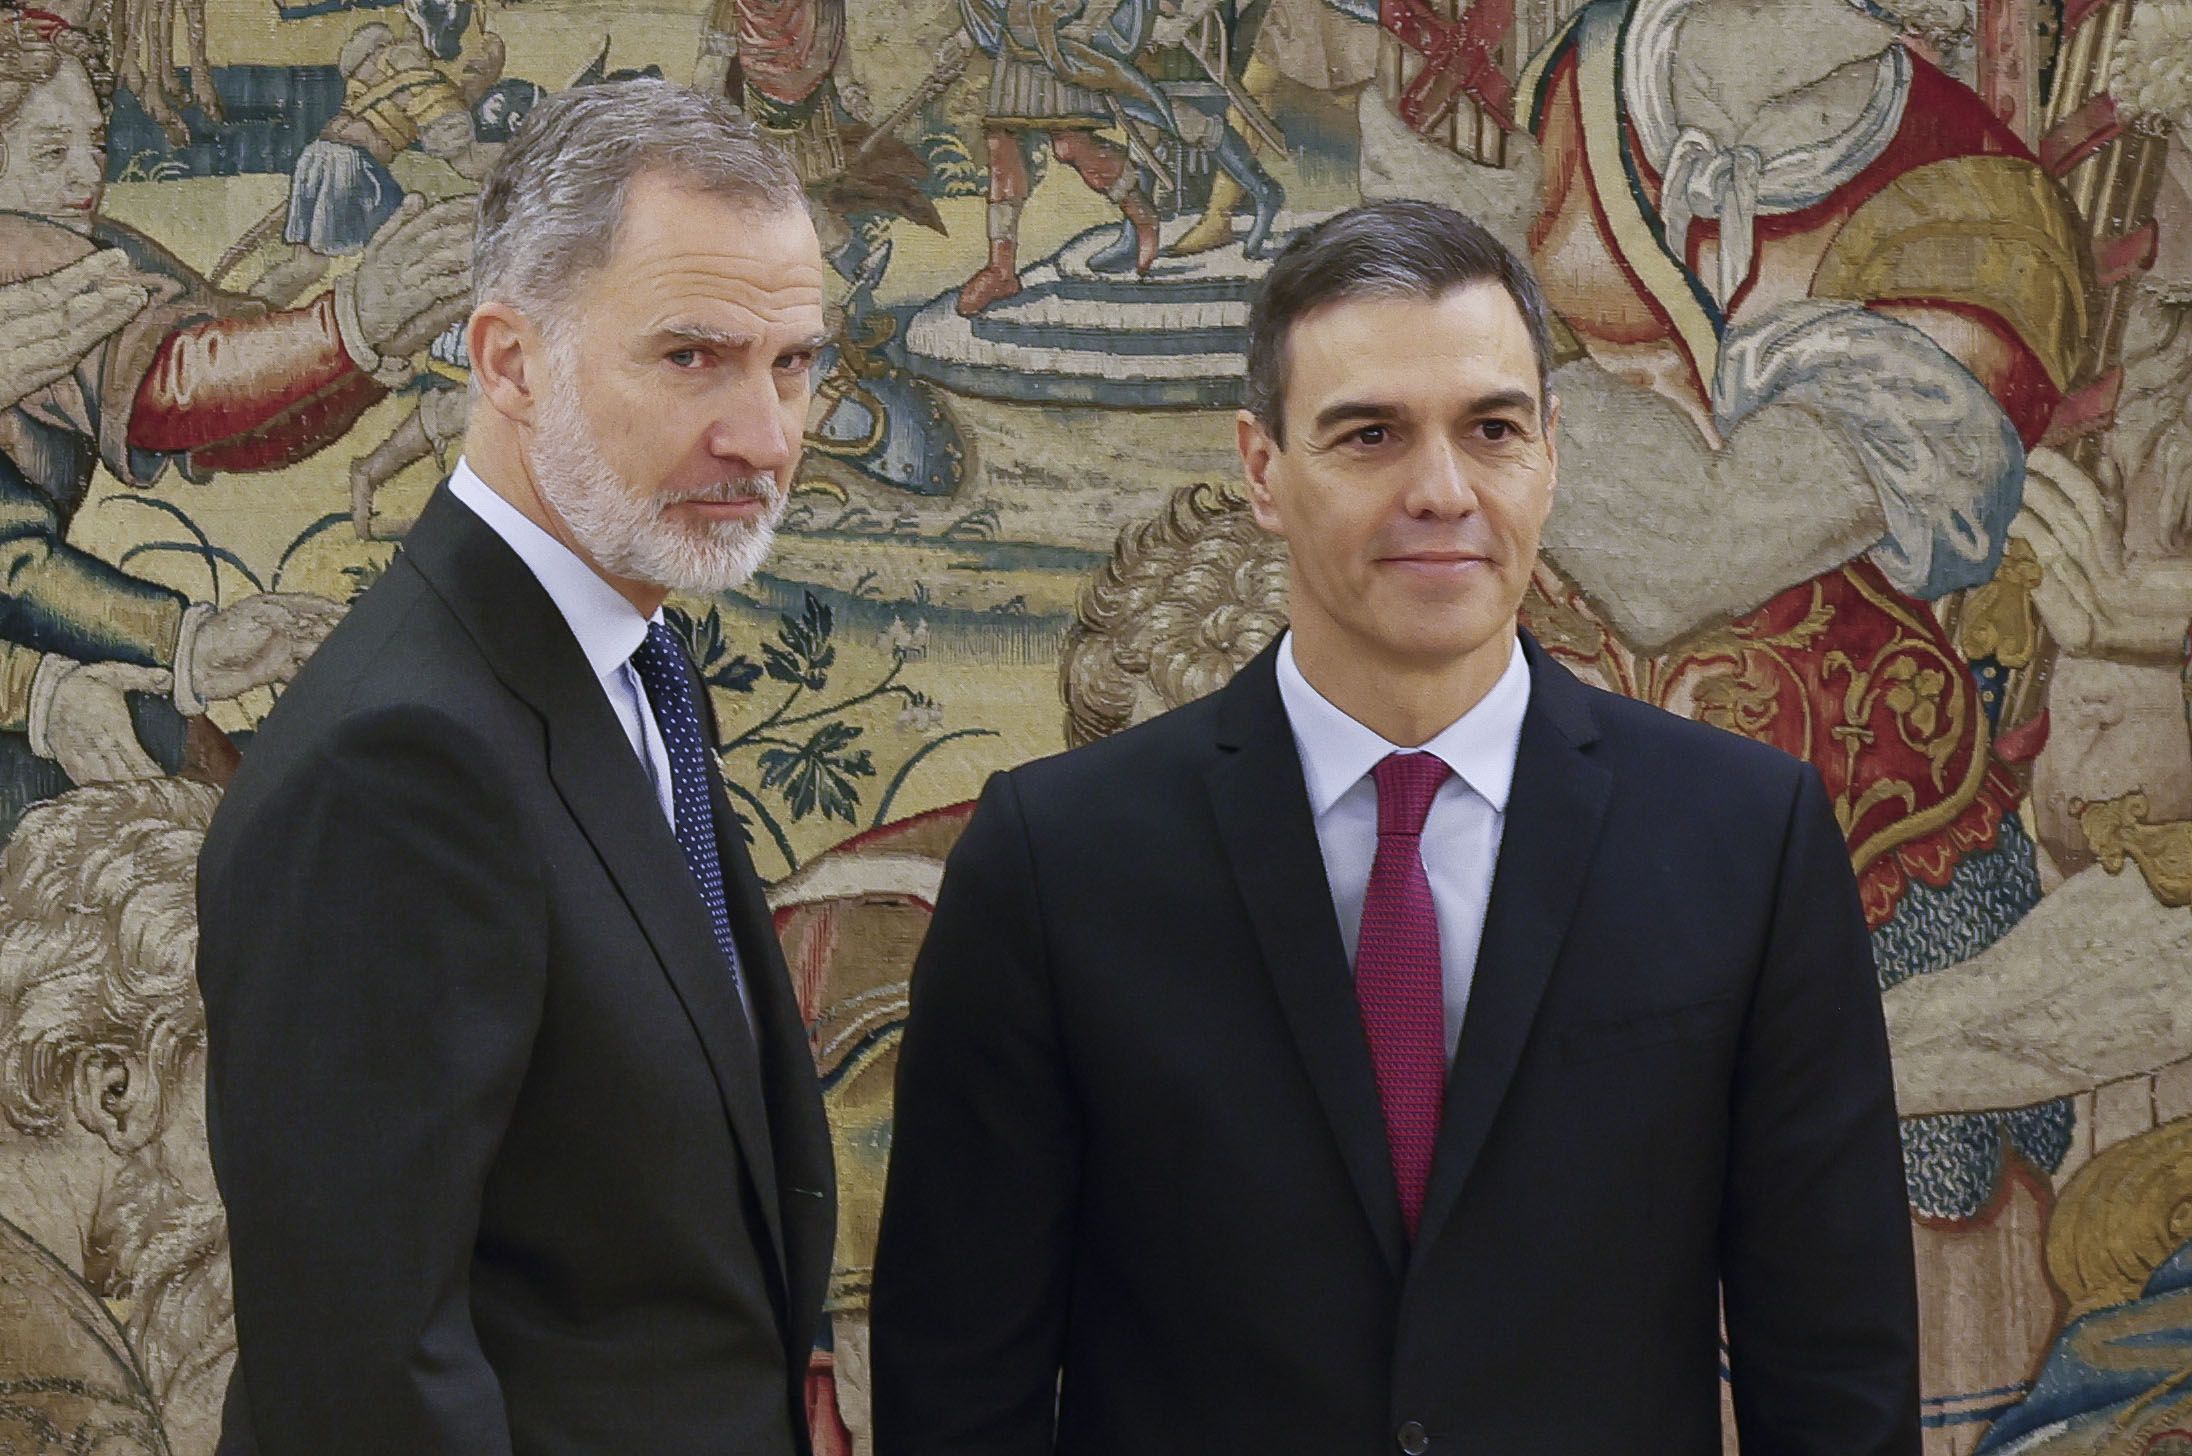 En directo | Pedro Sánchez anuncia si dimite o continúa: sigue su intervención en directo